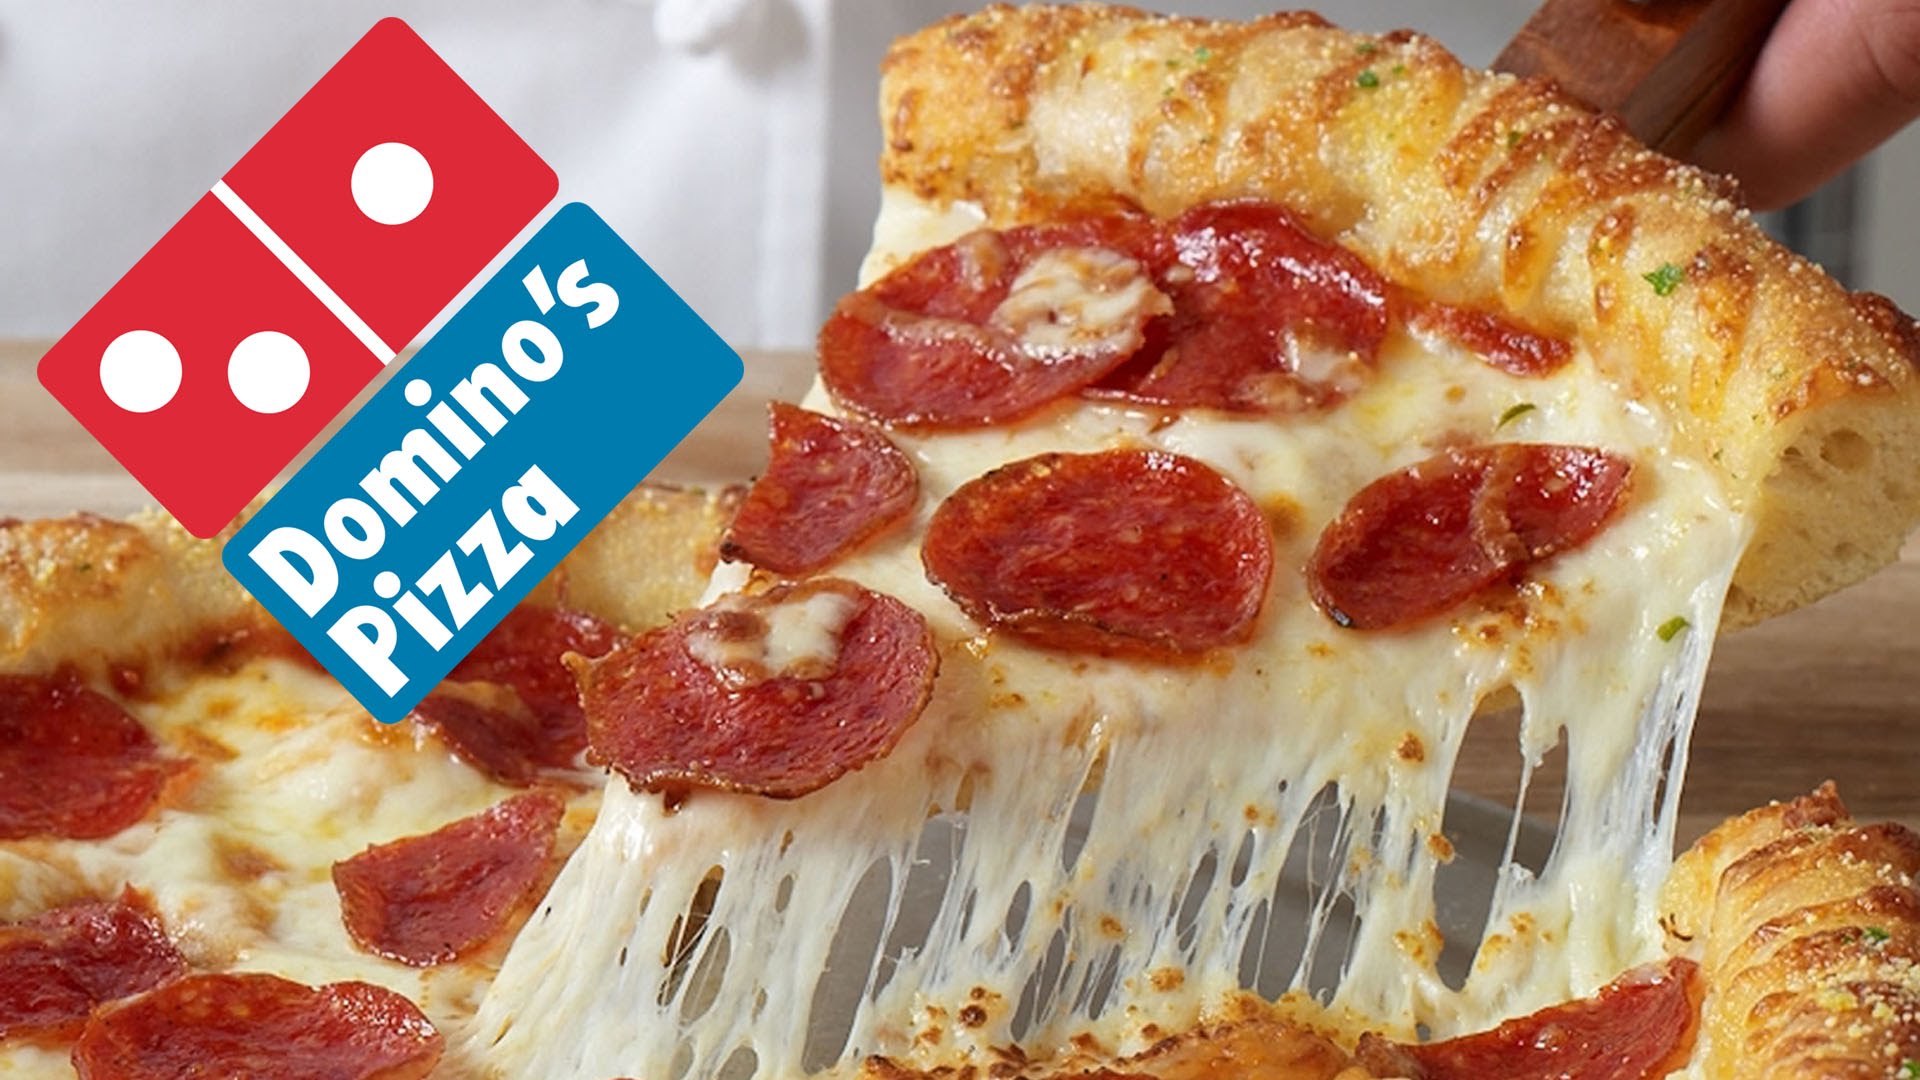 dominos-pizza1.jpg